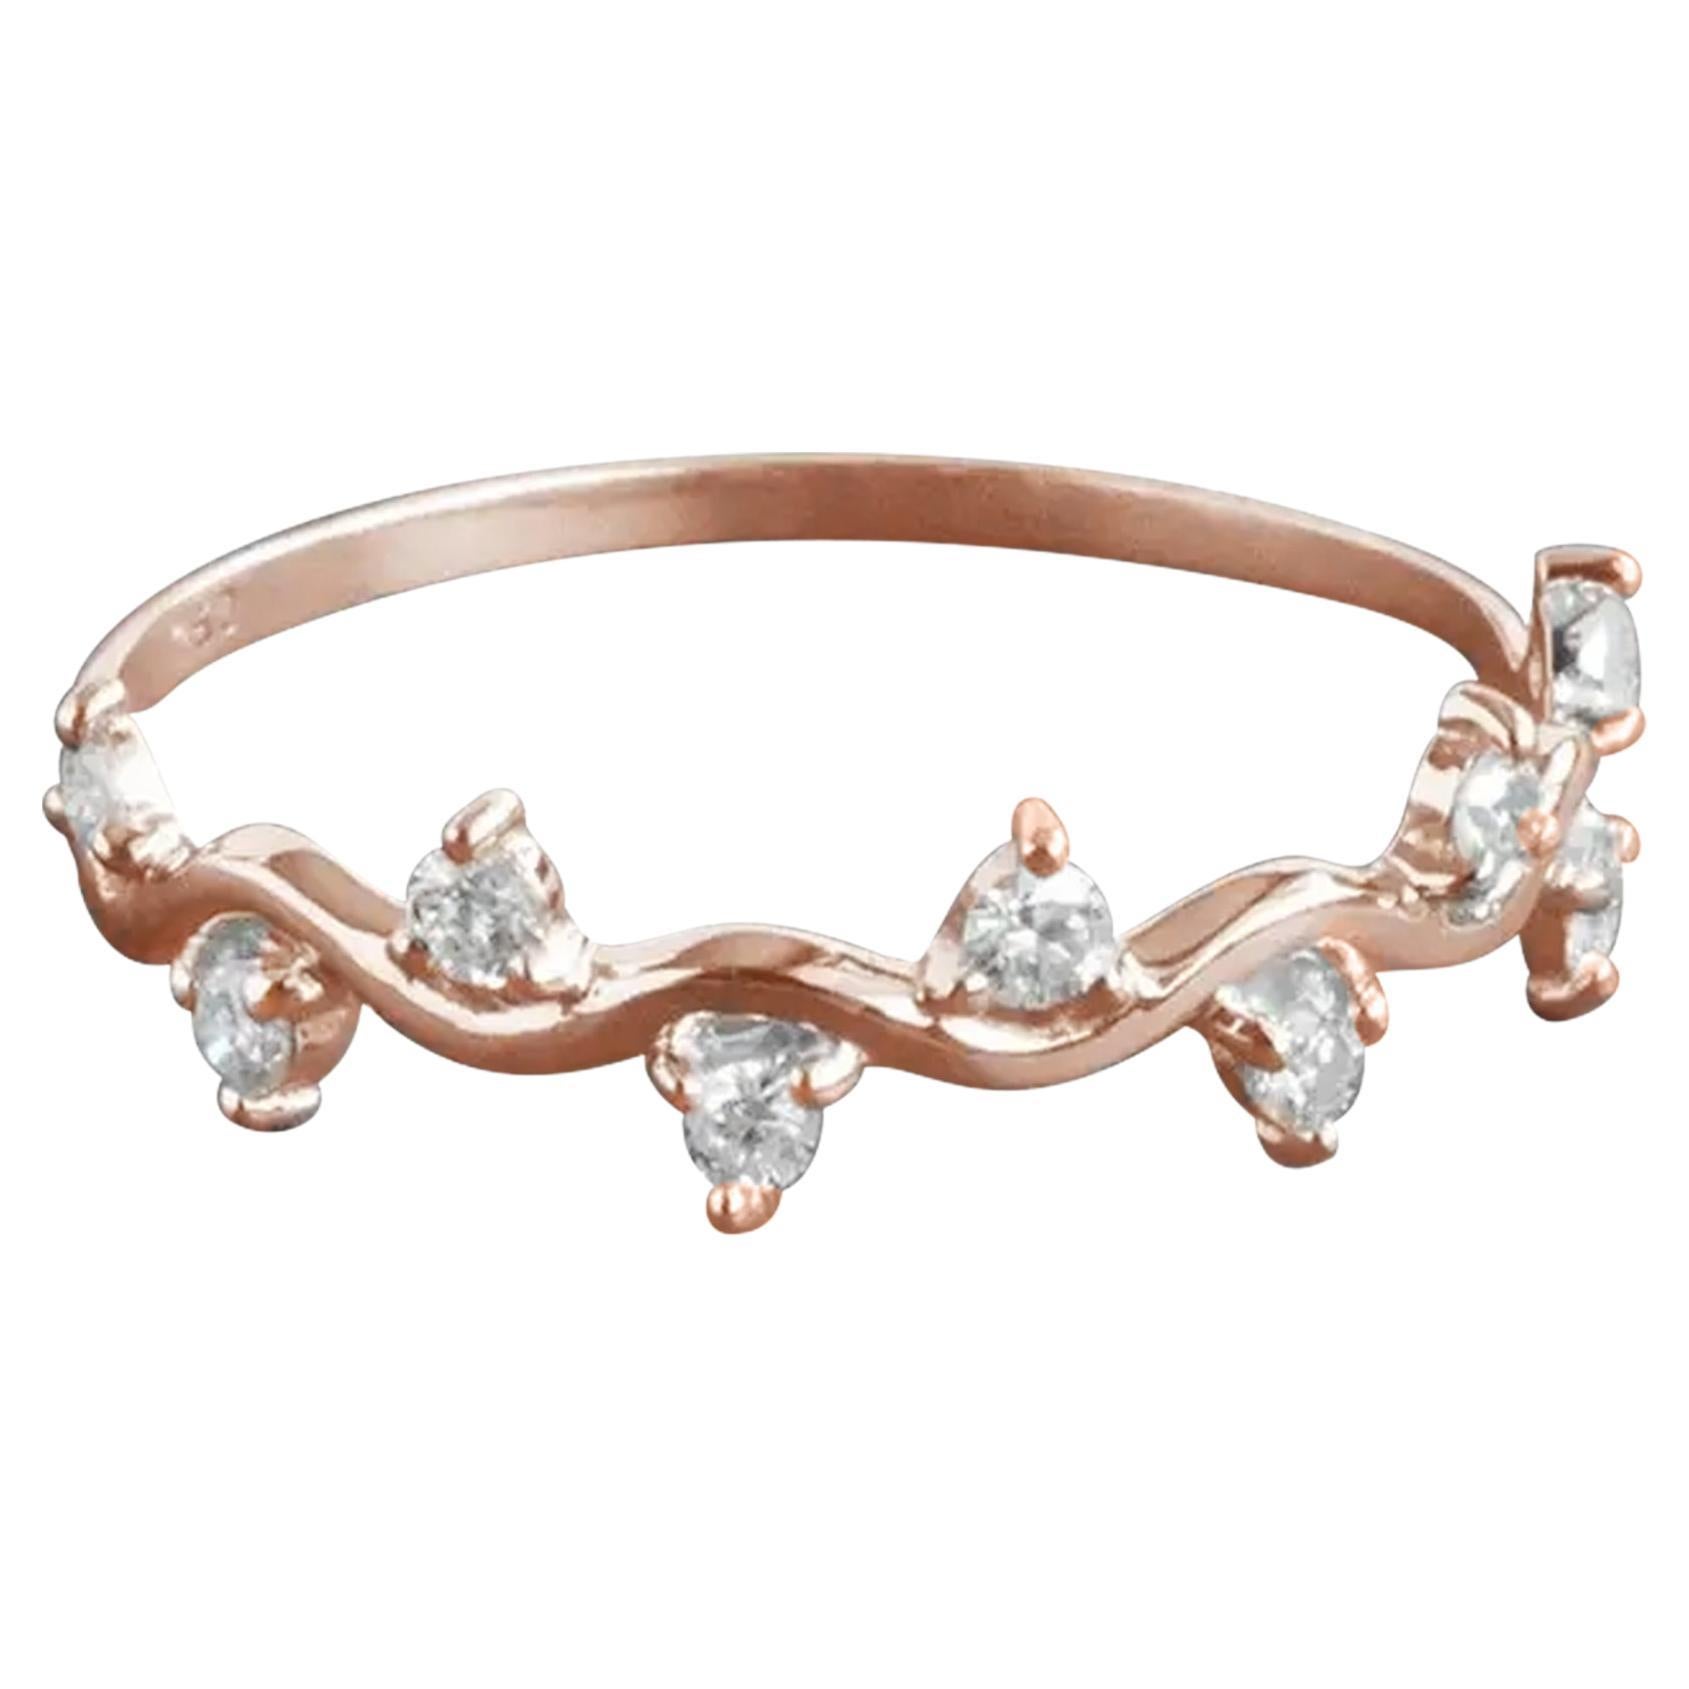 For Sale:  18k Gold Diamond Ring Cluster Diamond Ring Half Eternity Gift Ring 2